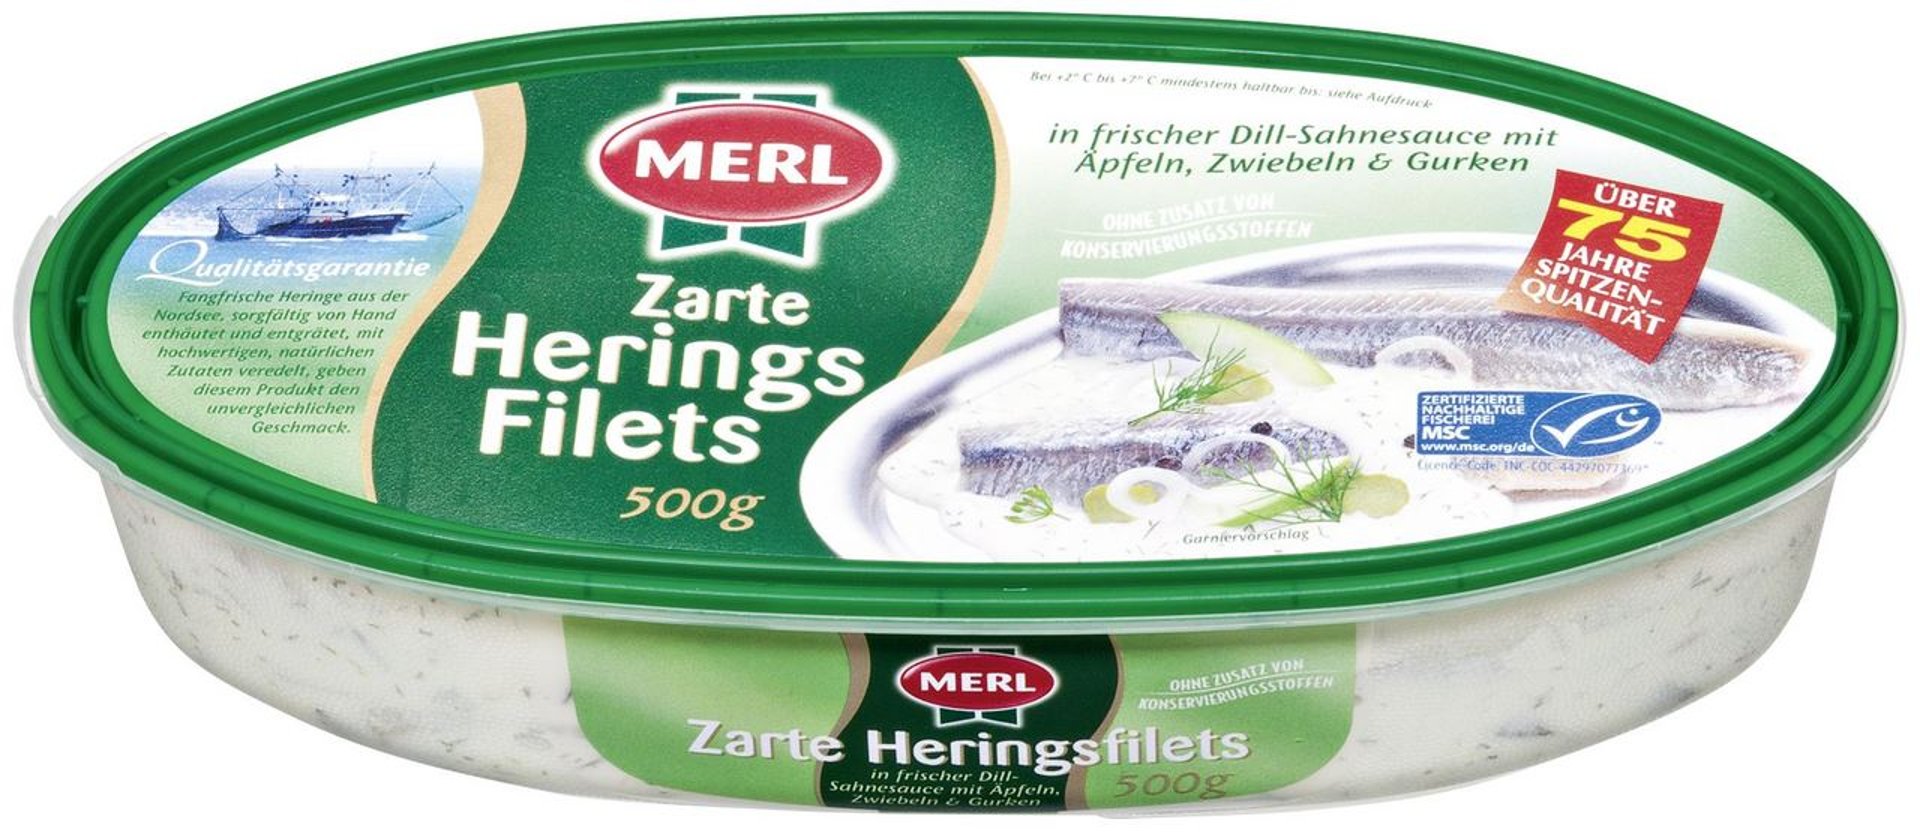 Merl - Heringsfilet in Dillsahnesauce - 500 g Becher